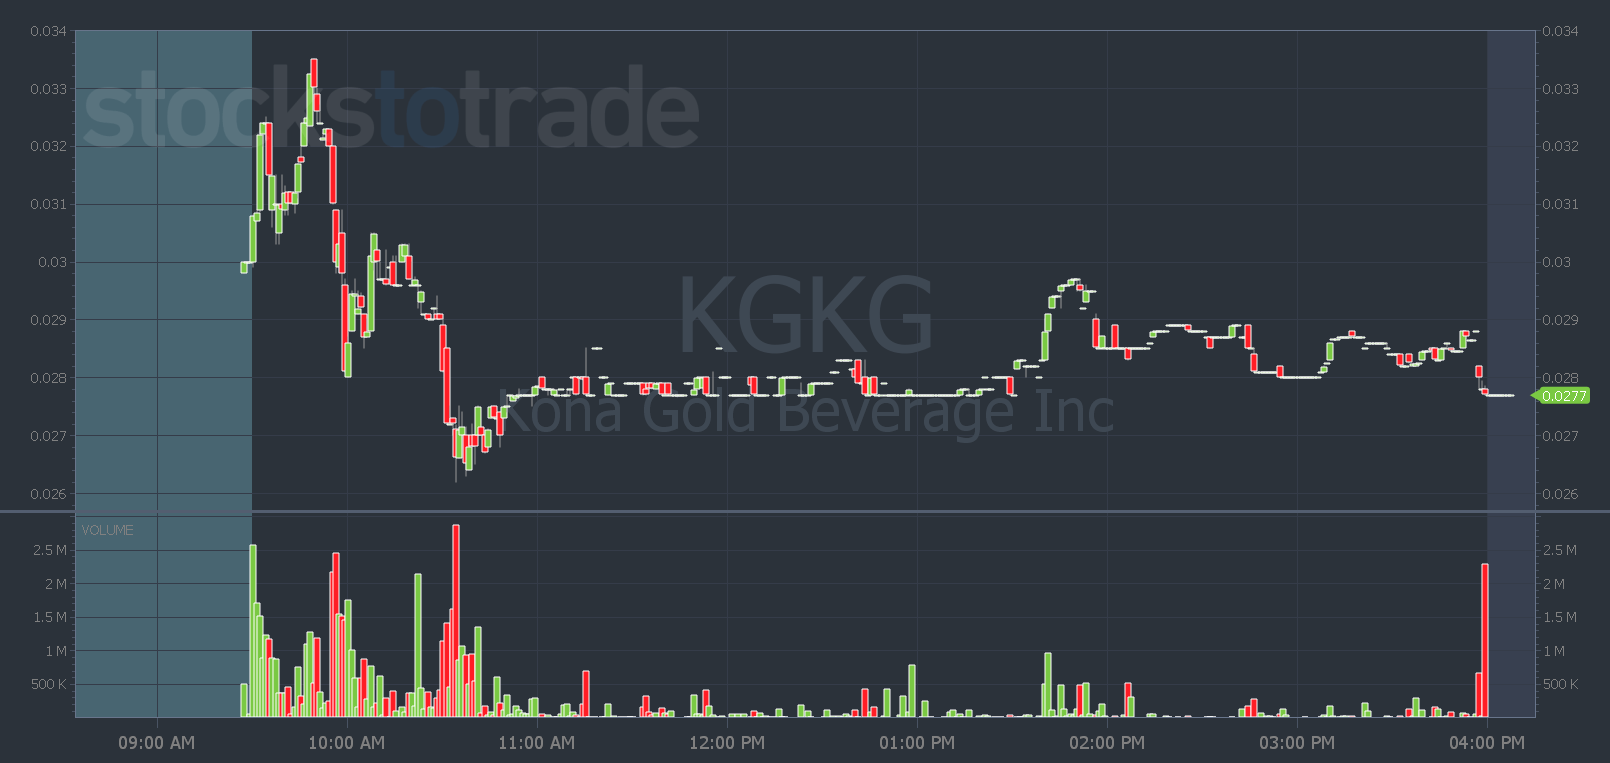 KGKG stock chart